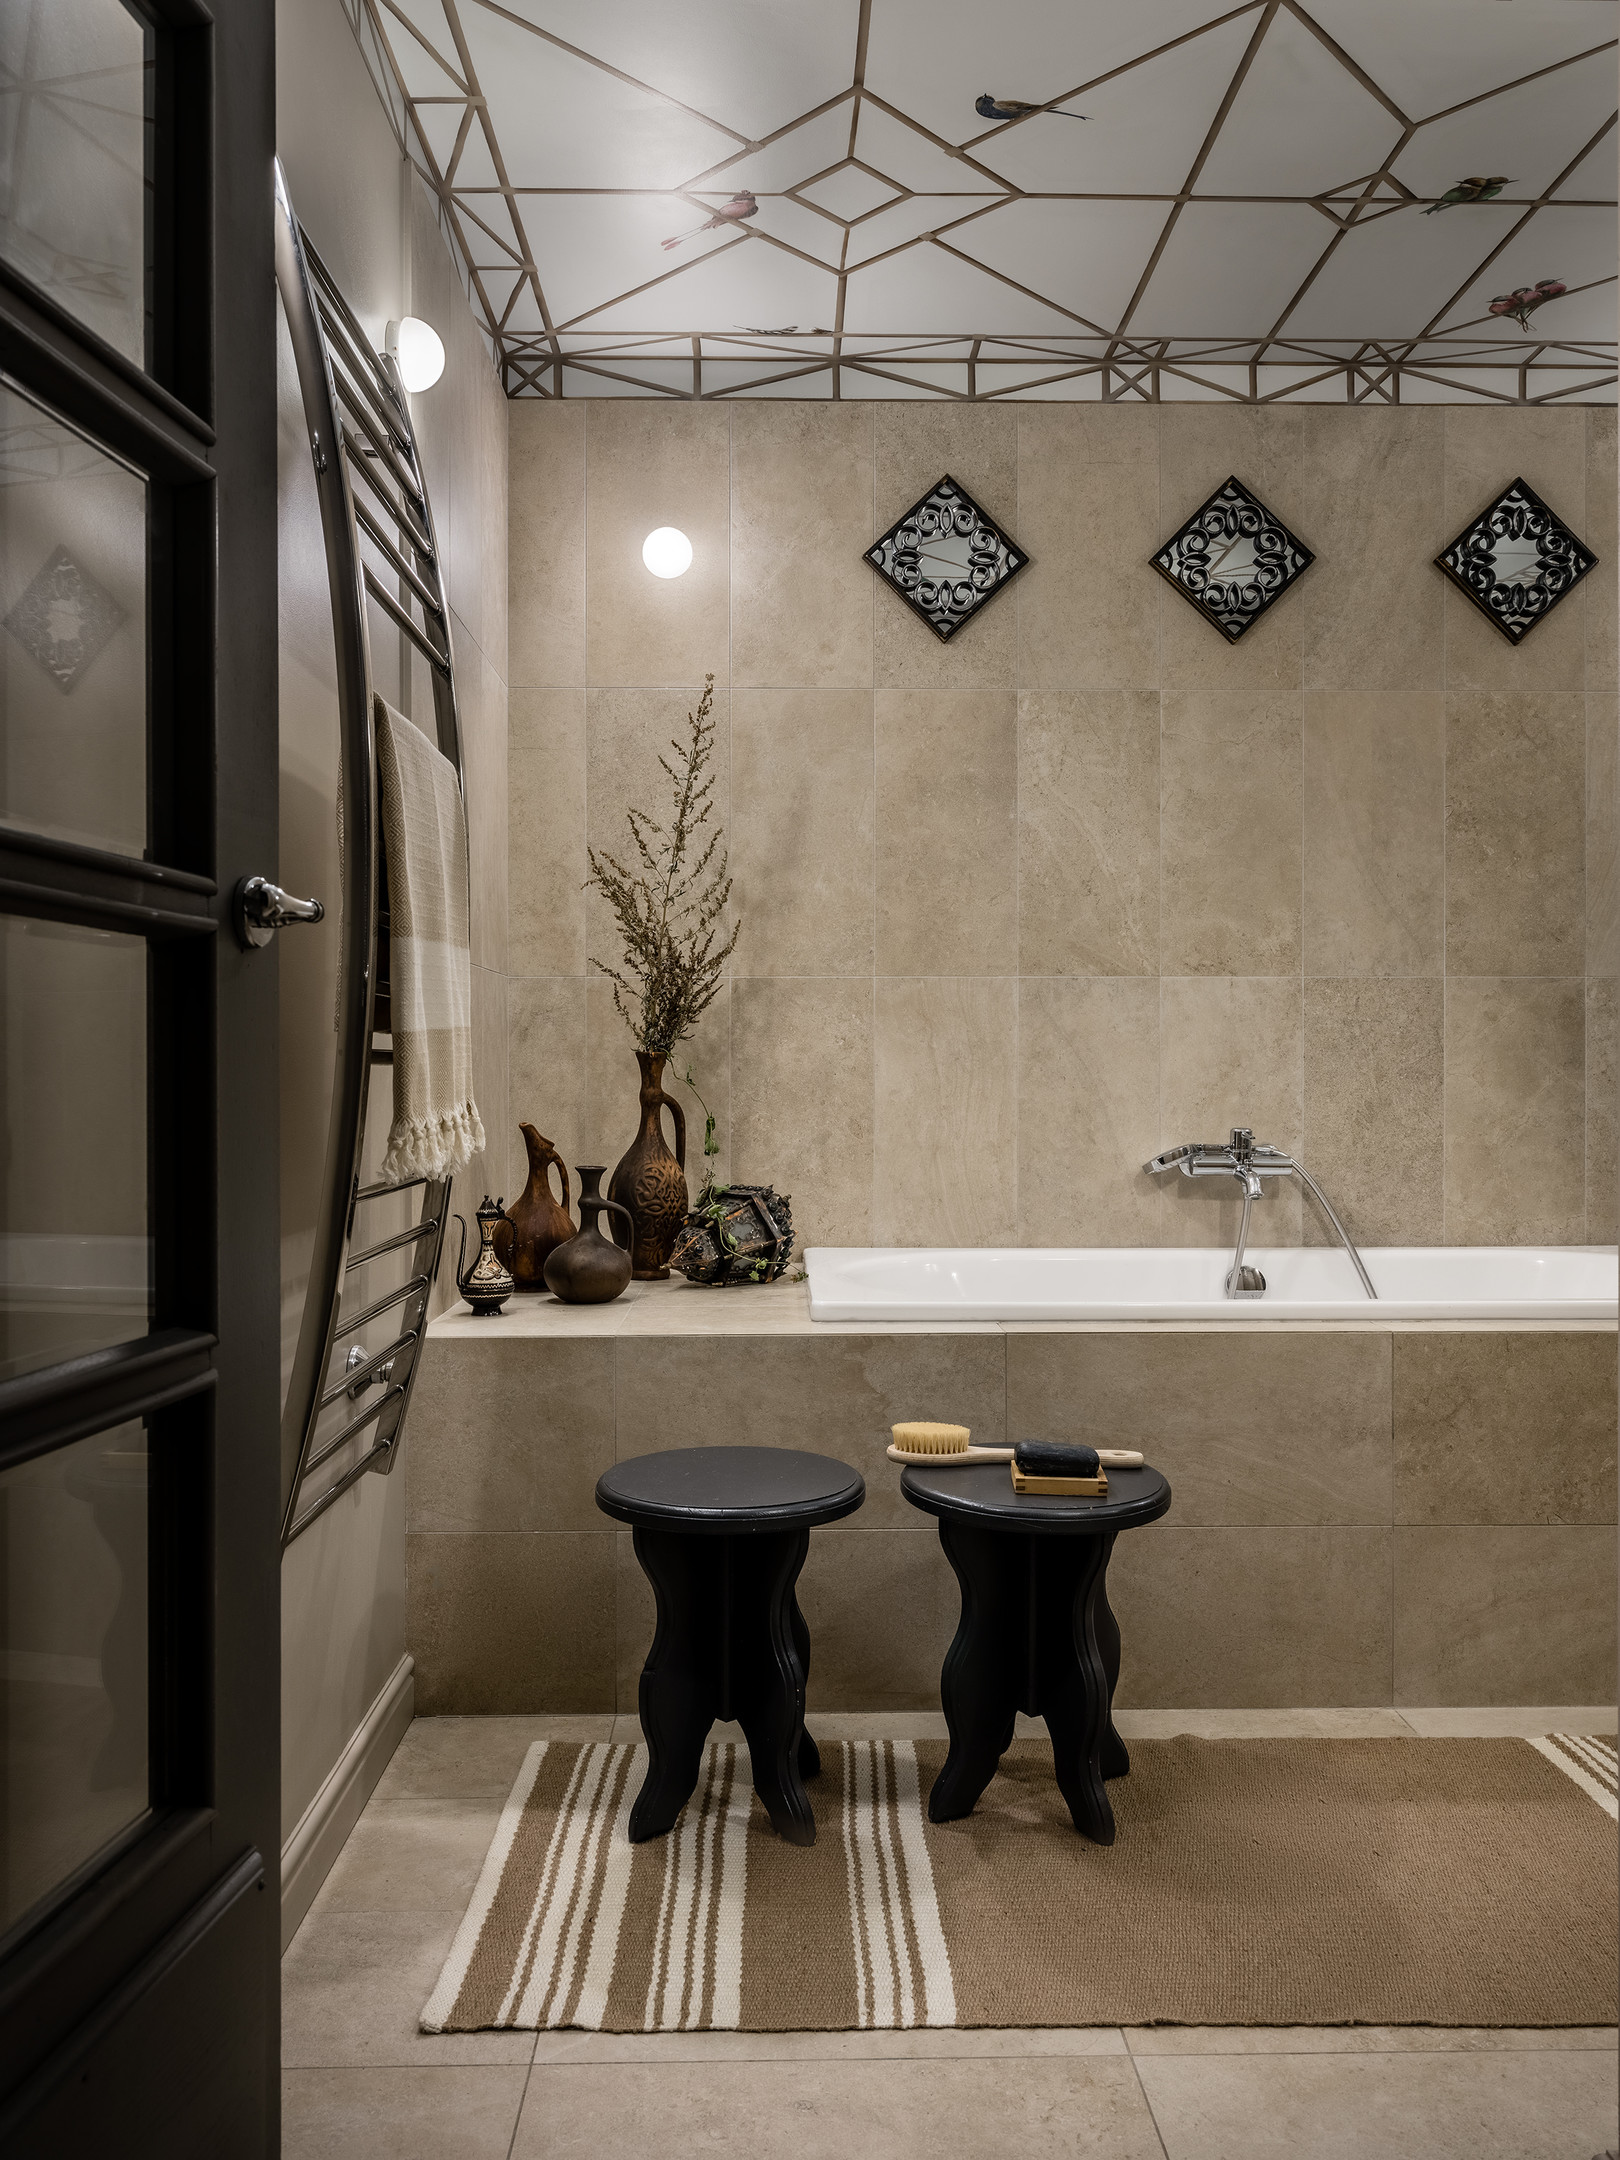 Và cuối cùng là phòng tắm thiết kế theo phong cách cổ điển, sử dụng màu be đậm cho tường, sàn nhà, bồn tắm nằm và thảm trải sàn. Những chi tiết như cửa ra vào, 2 chiếc ghế và 3 tấm gương xếp hình thoi kiểu dáng cổ điển đều có màu đen sang trọng.